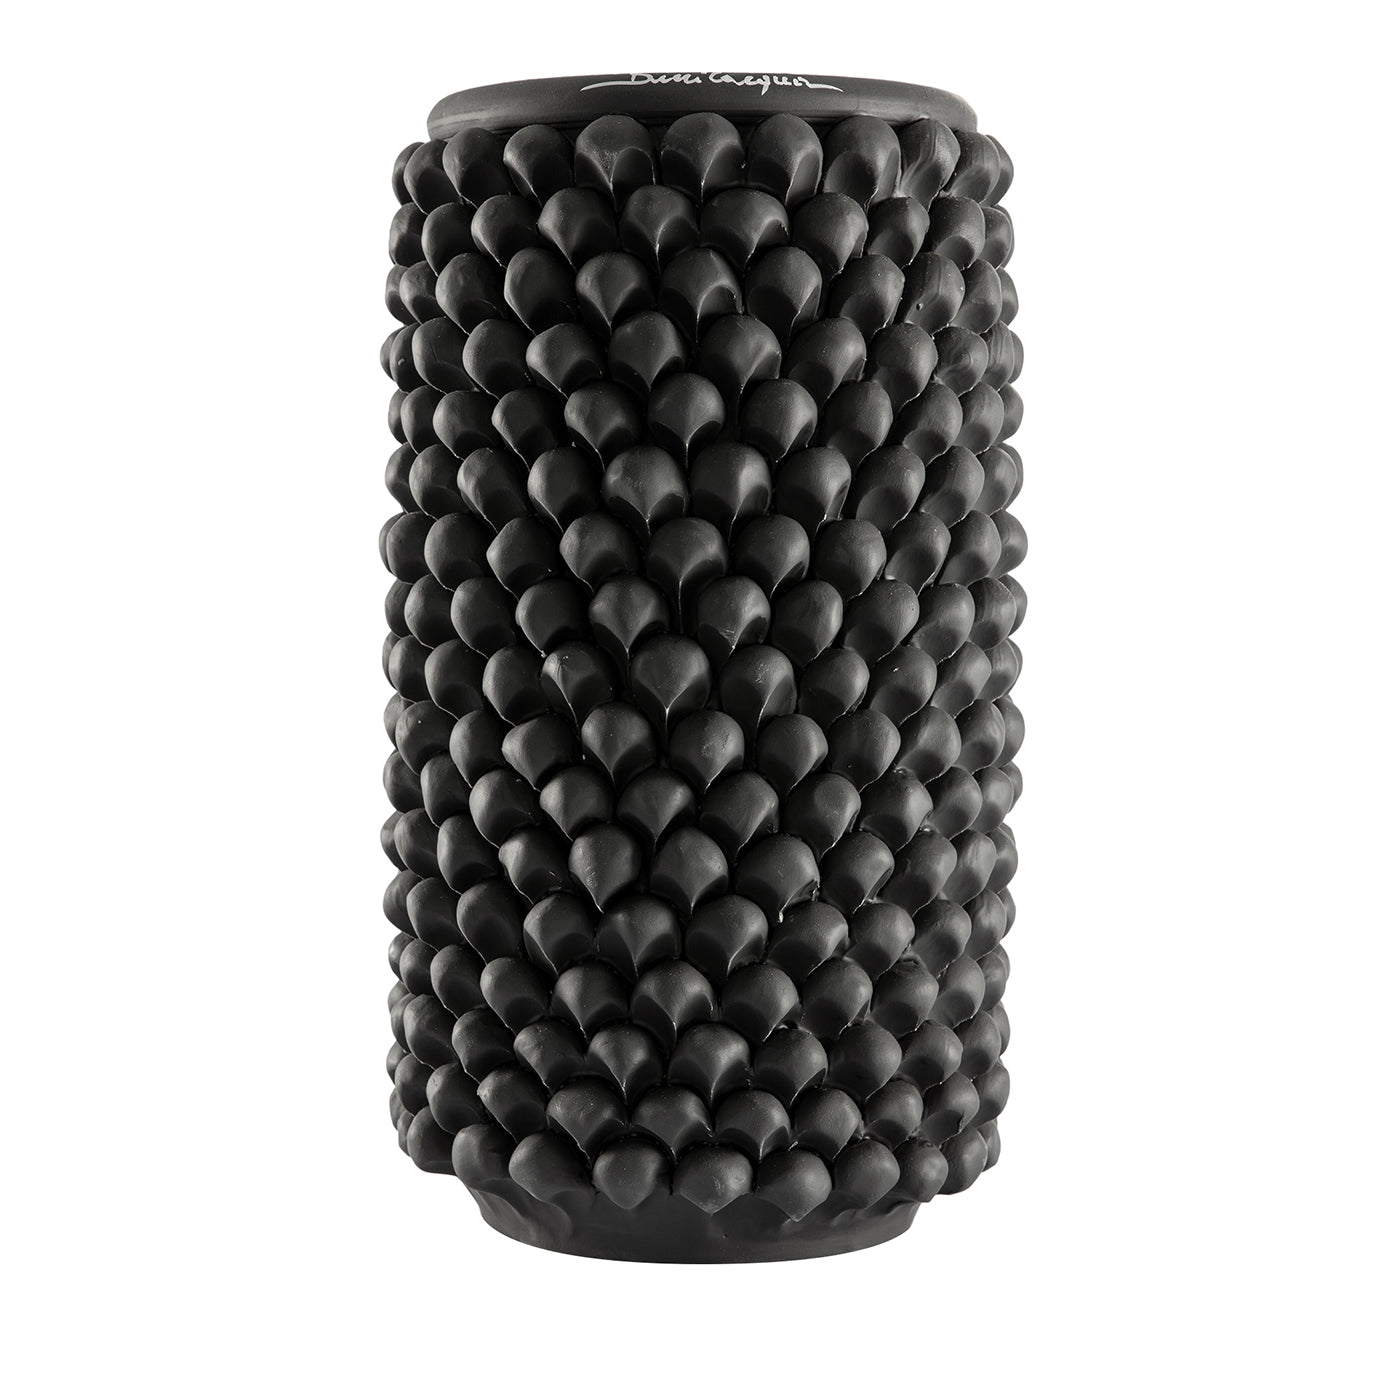 Jarrón cilíndrico de cerámica negra - Vista principal